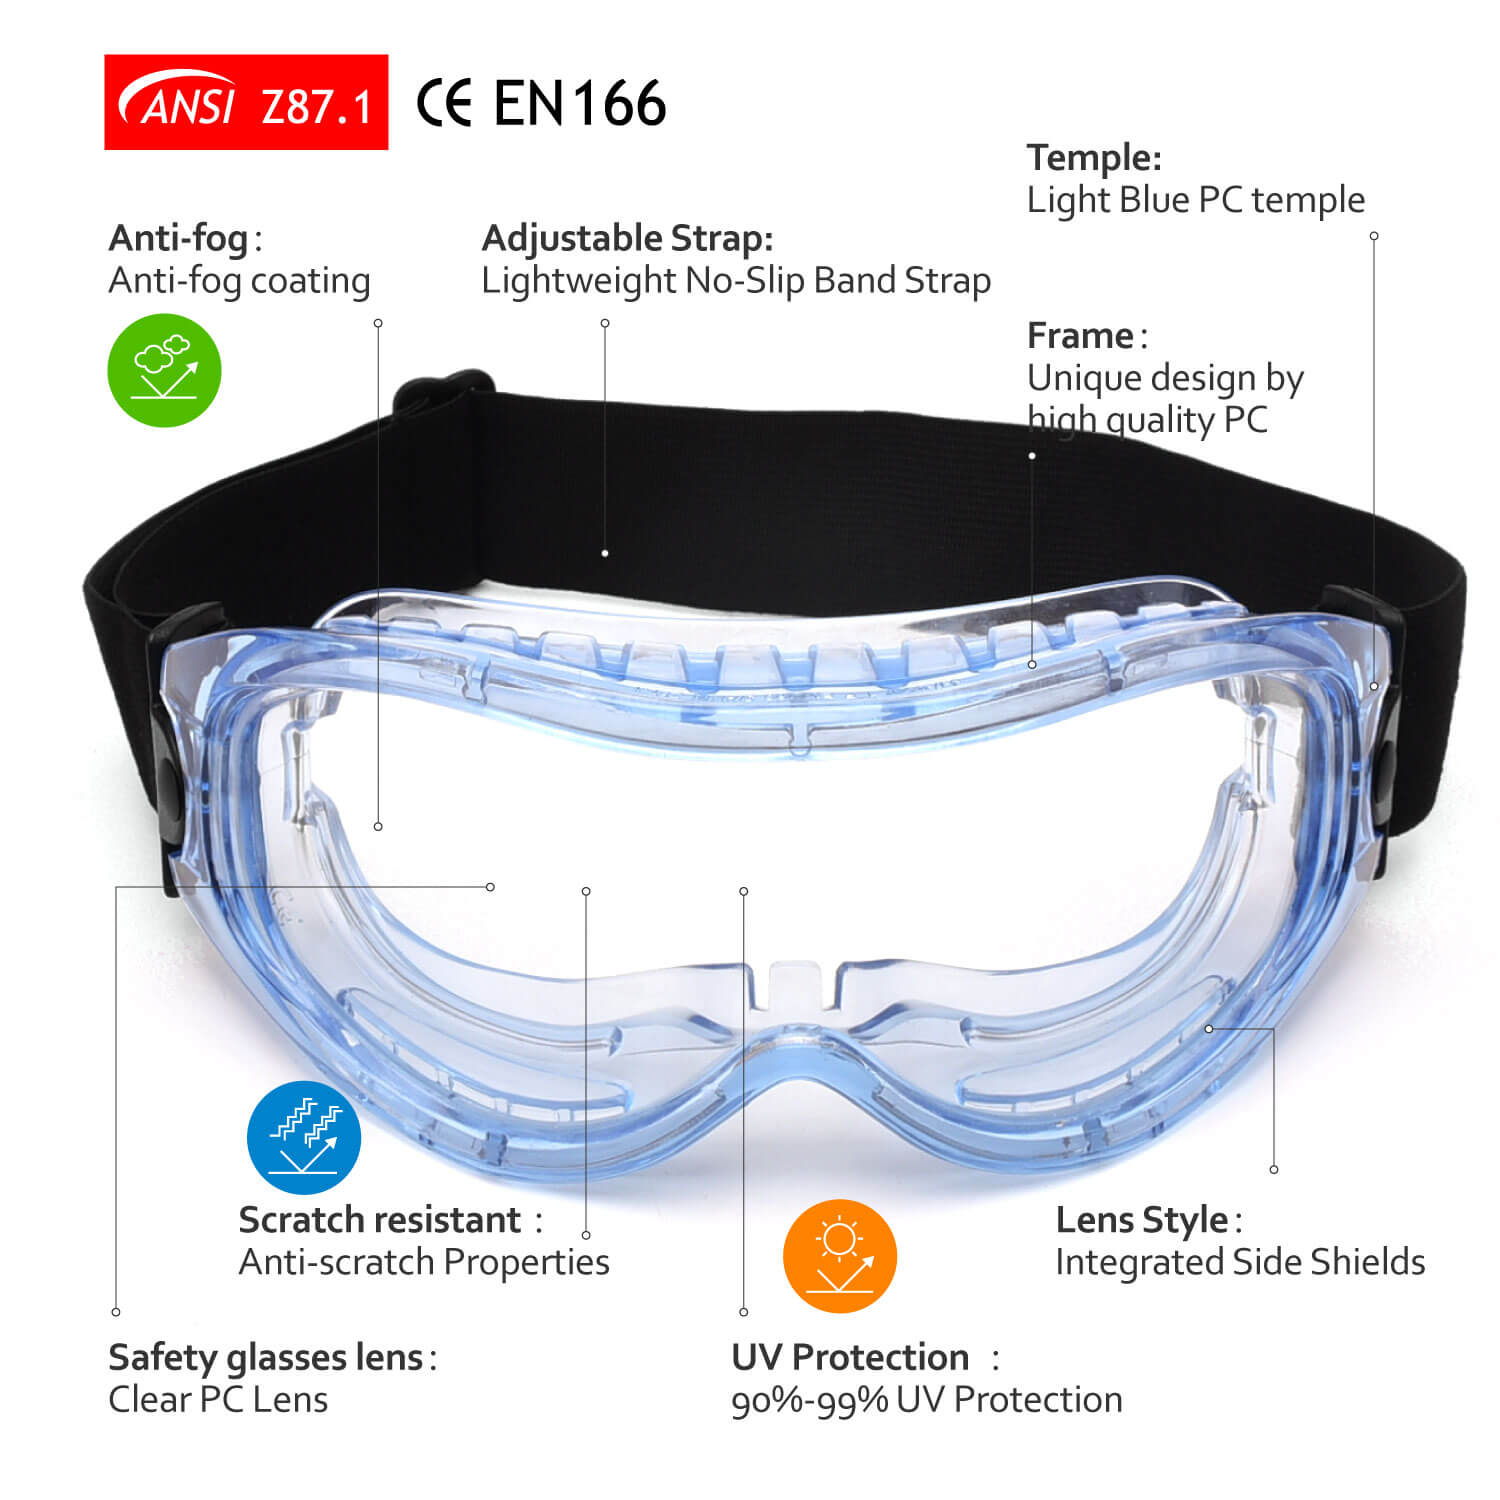 Schutzbrille gegen Kratzer und Überbrillen von Safeyear